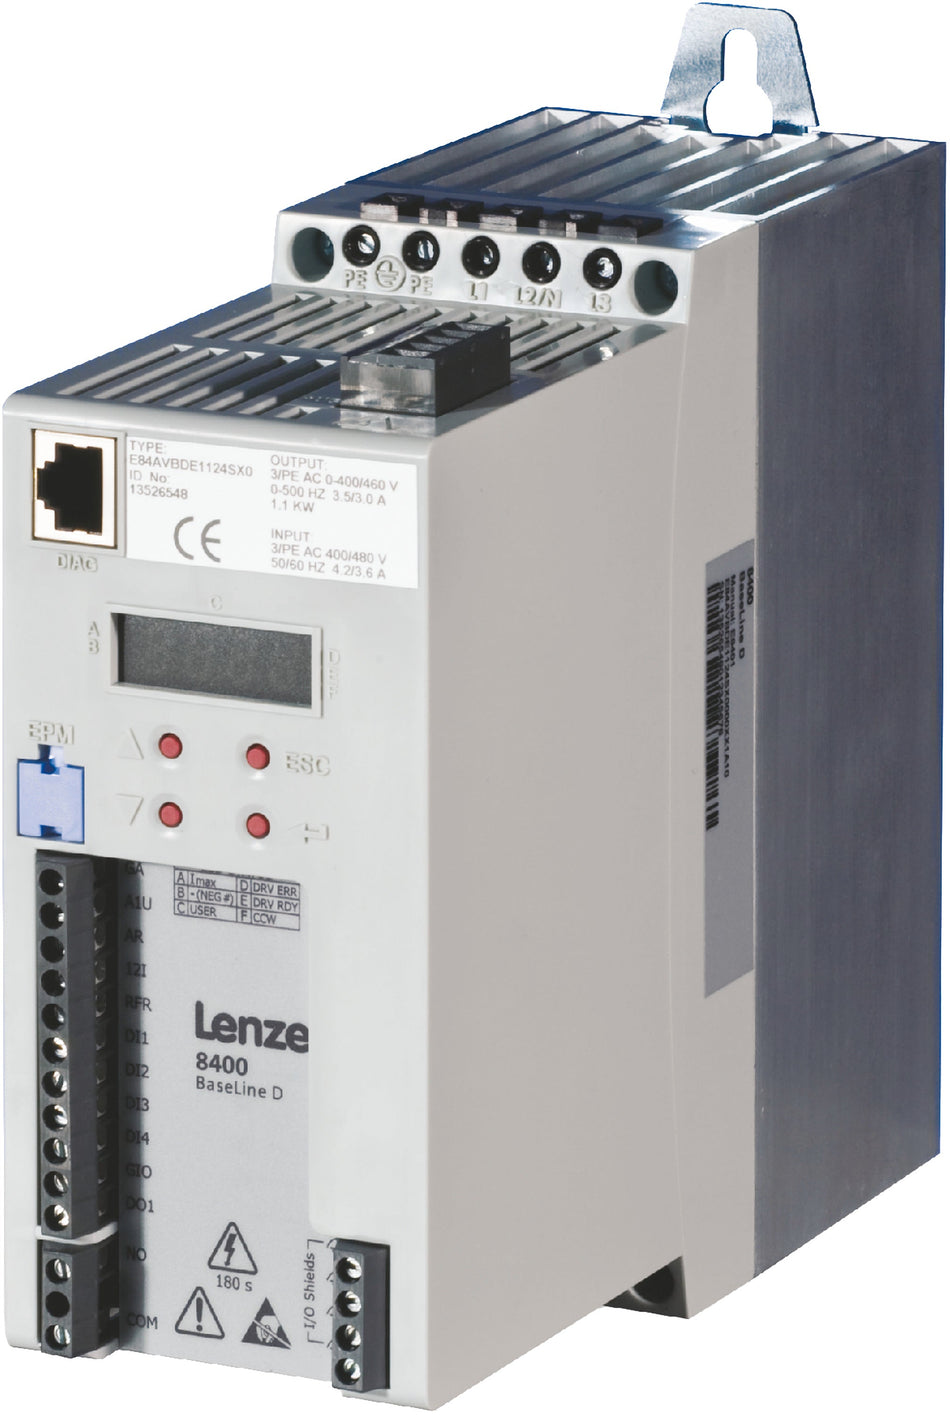 Lenze Inverter Drives 8400 BaseLine -  E84AVBCE1122SX0 1.1 kW